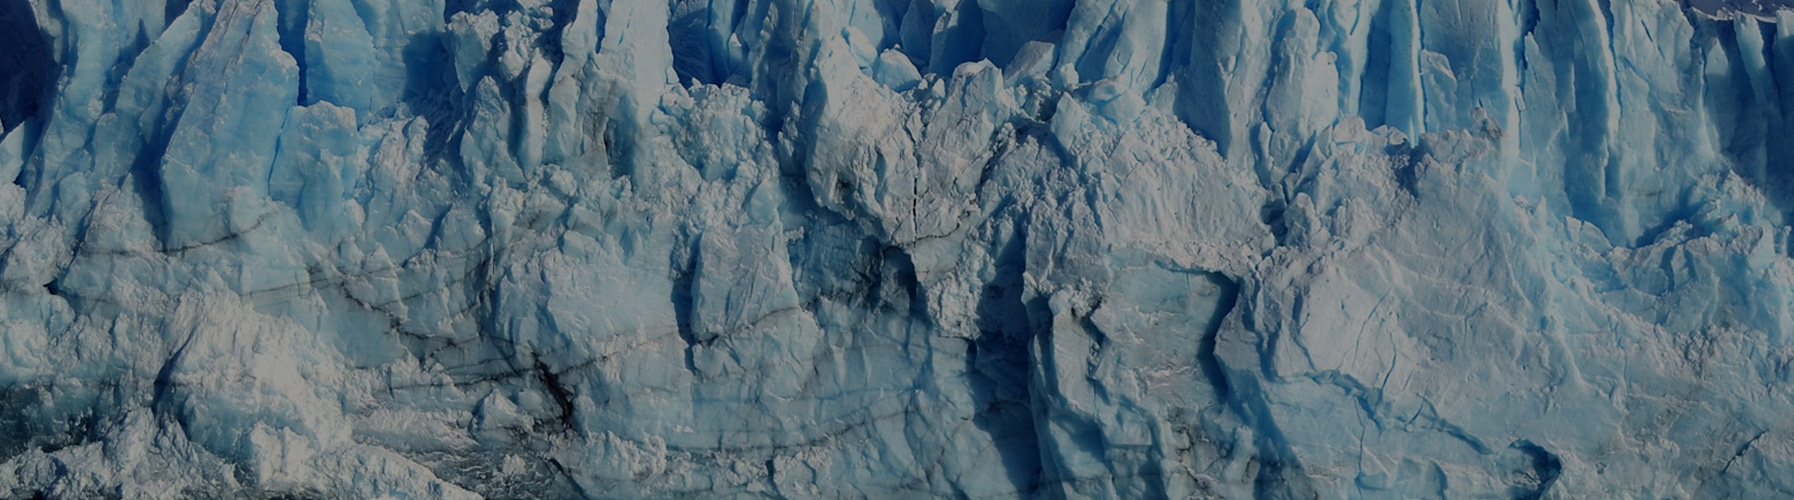 Escalade sur Glacier